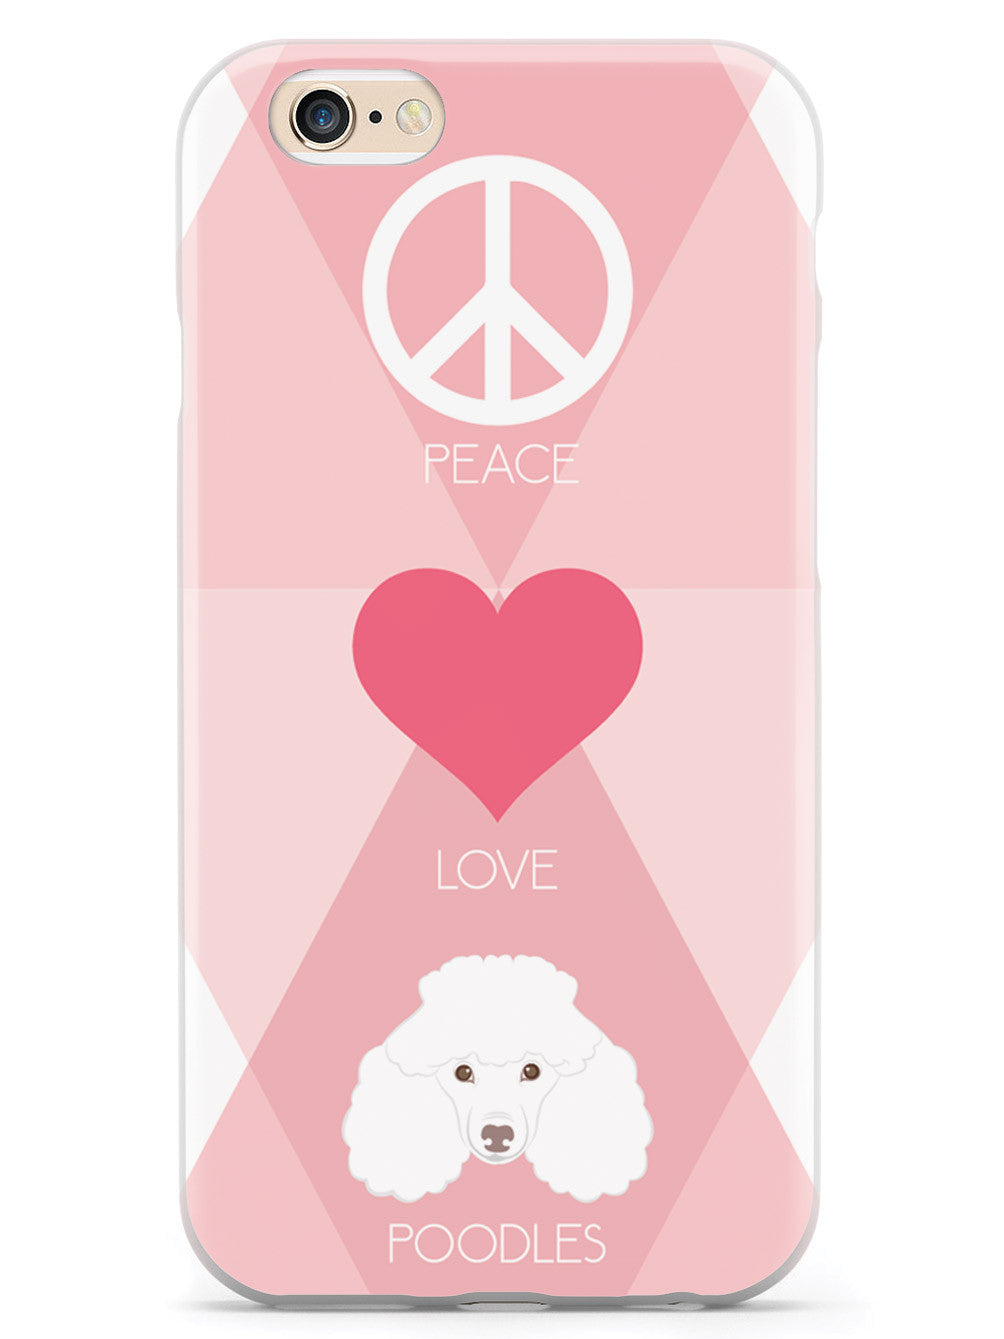 Peace, Love & Poodles Case